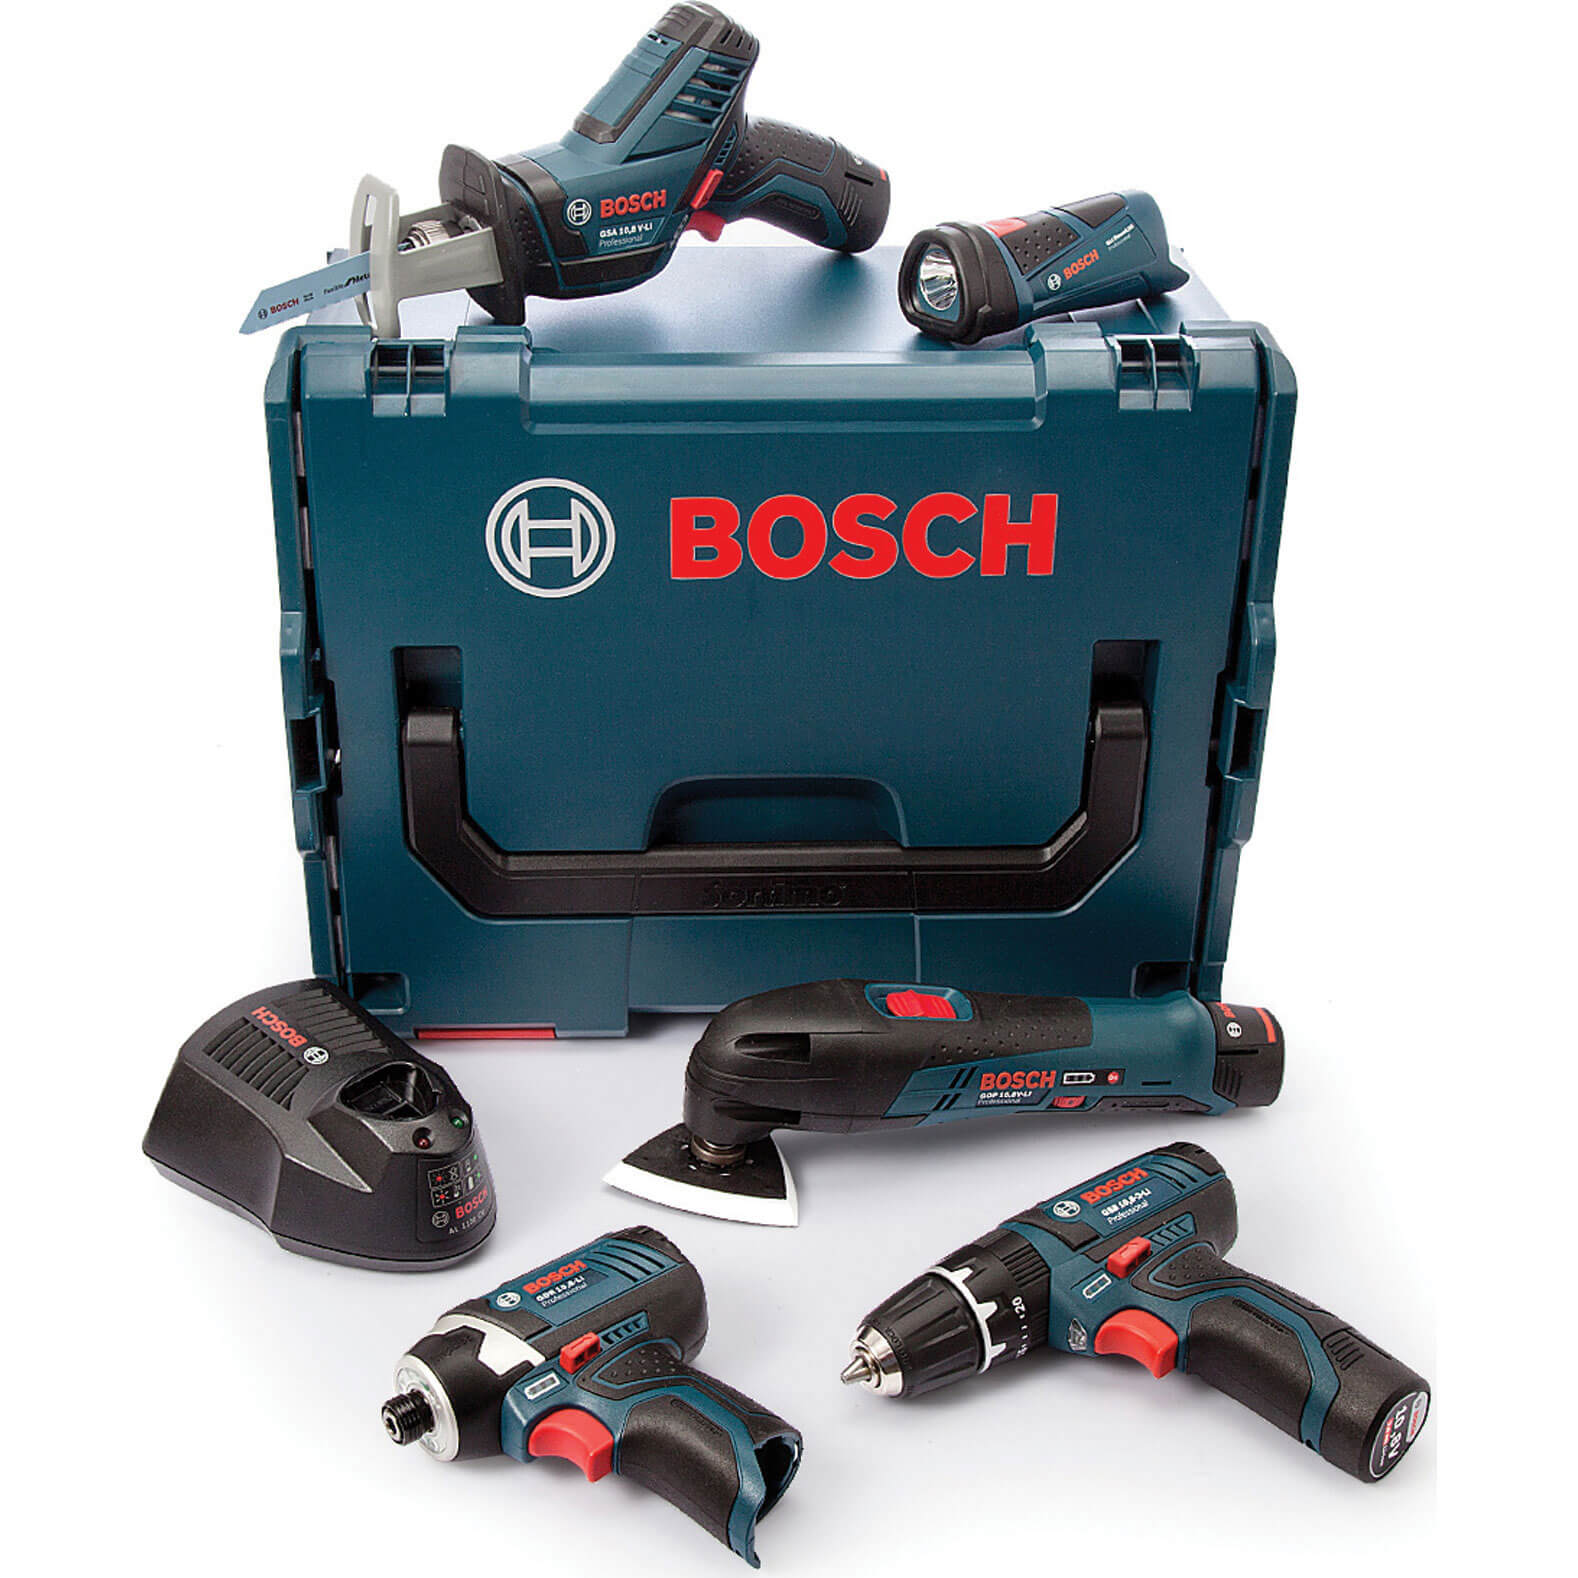 bochs tools